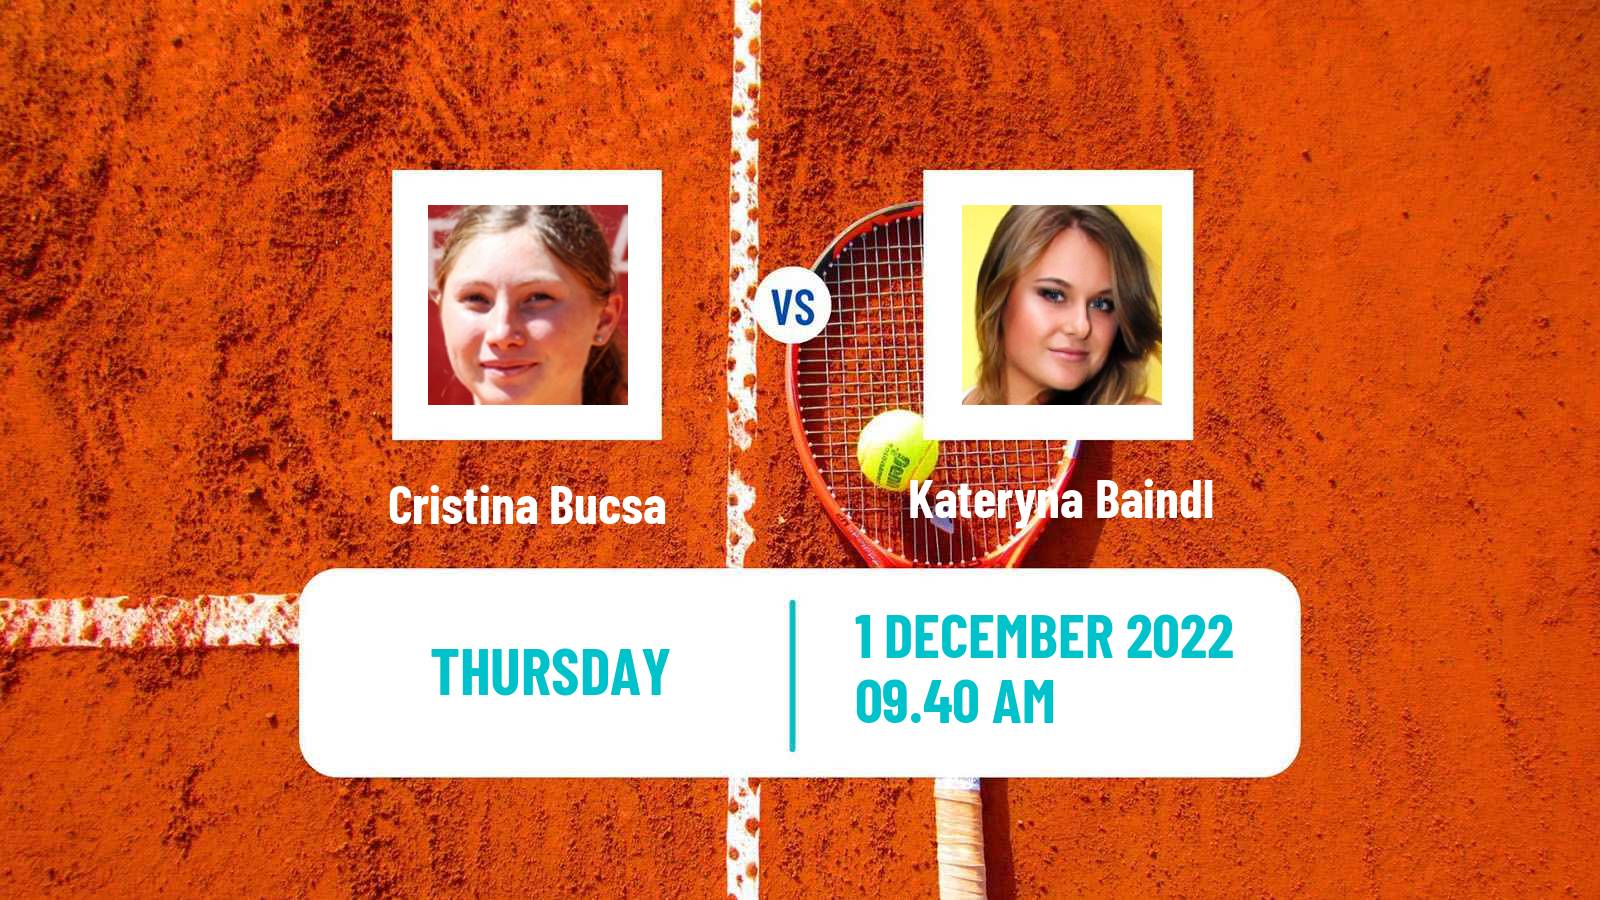 Tennis ATP Challenger Cristina Bucsa - Kateryna Baindl